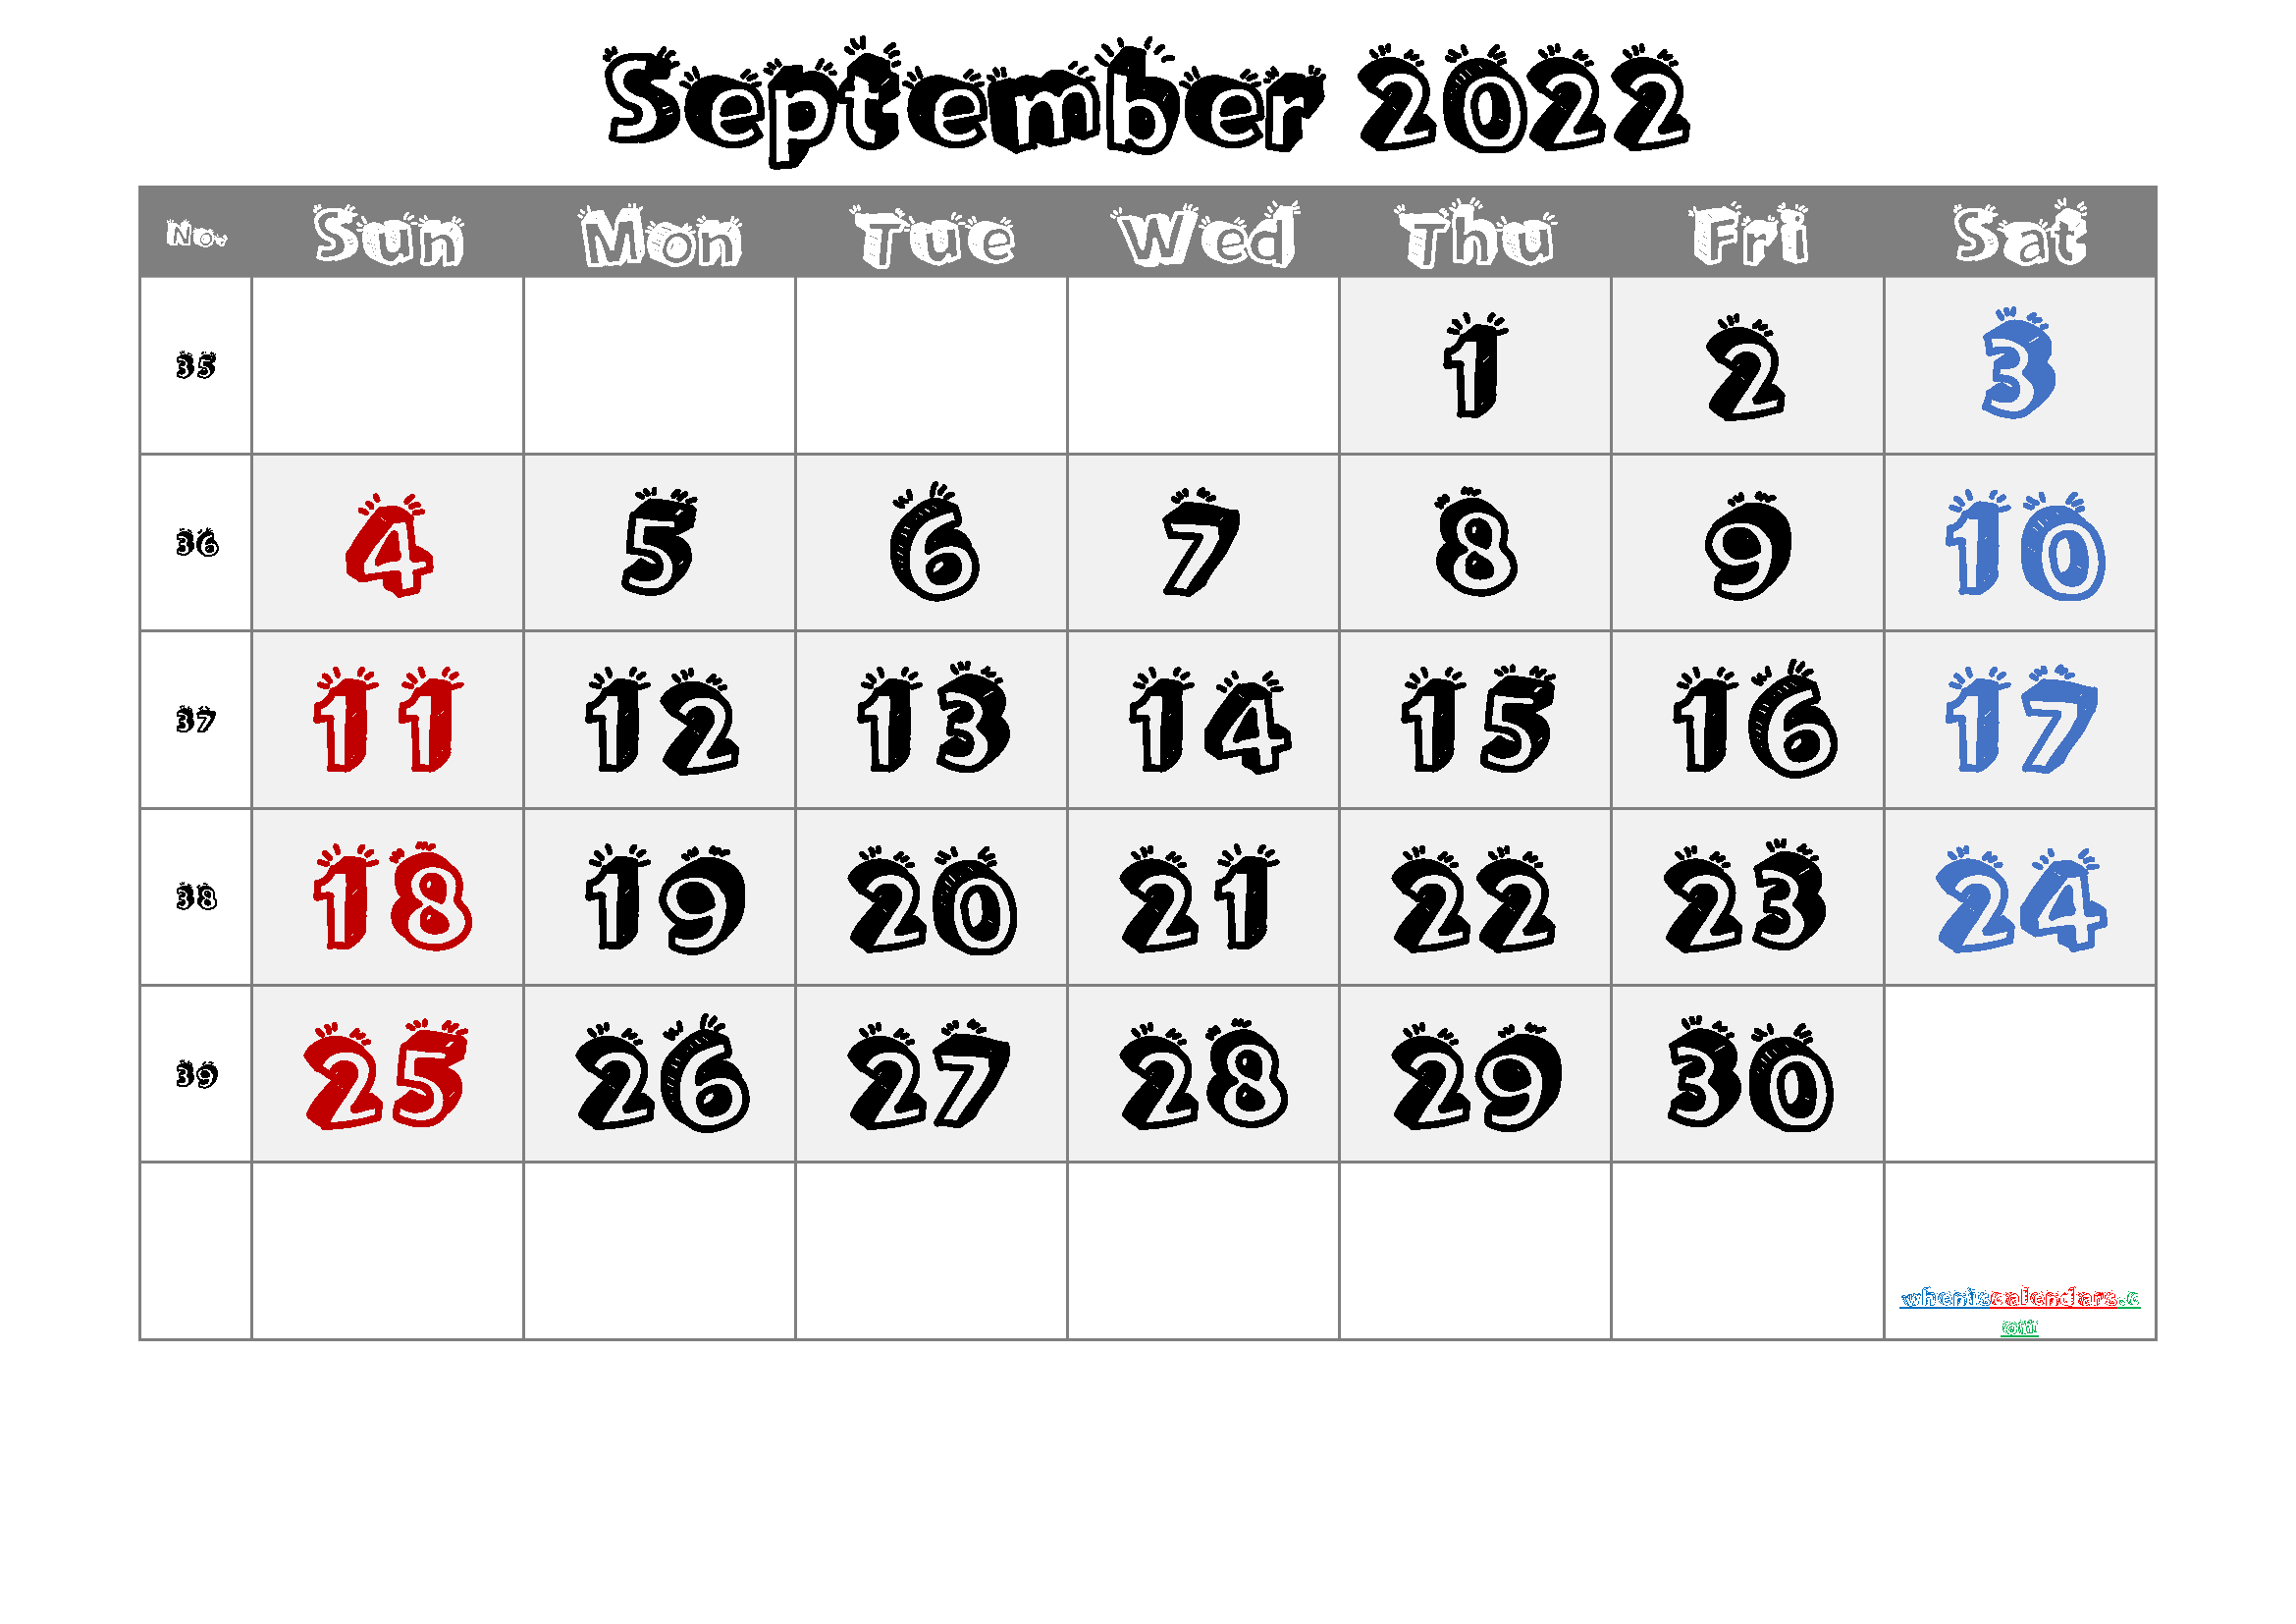 September 2022 Printable Calendar with Week Numbers